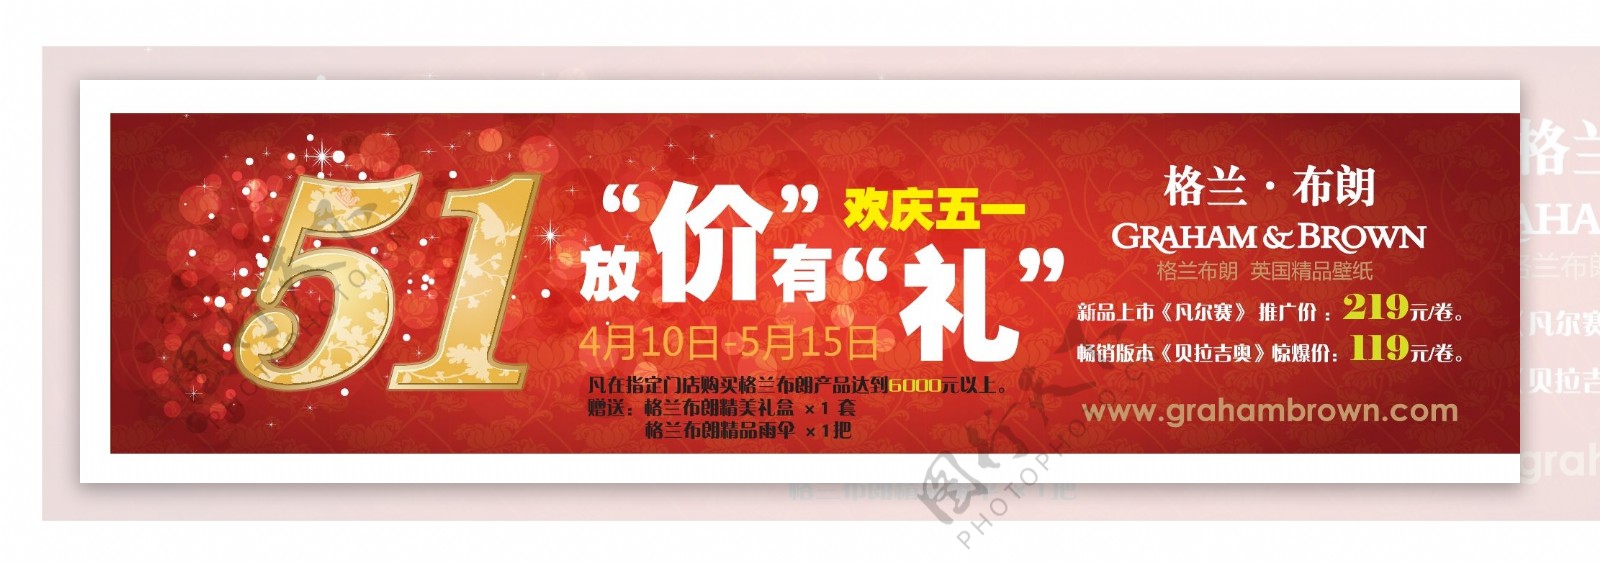 五一节日红色背景促销海报图片